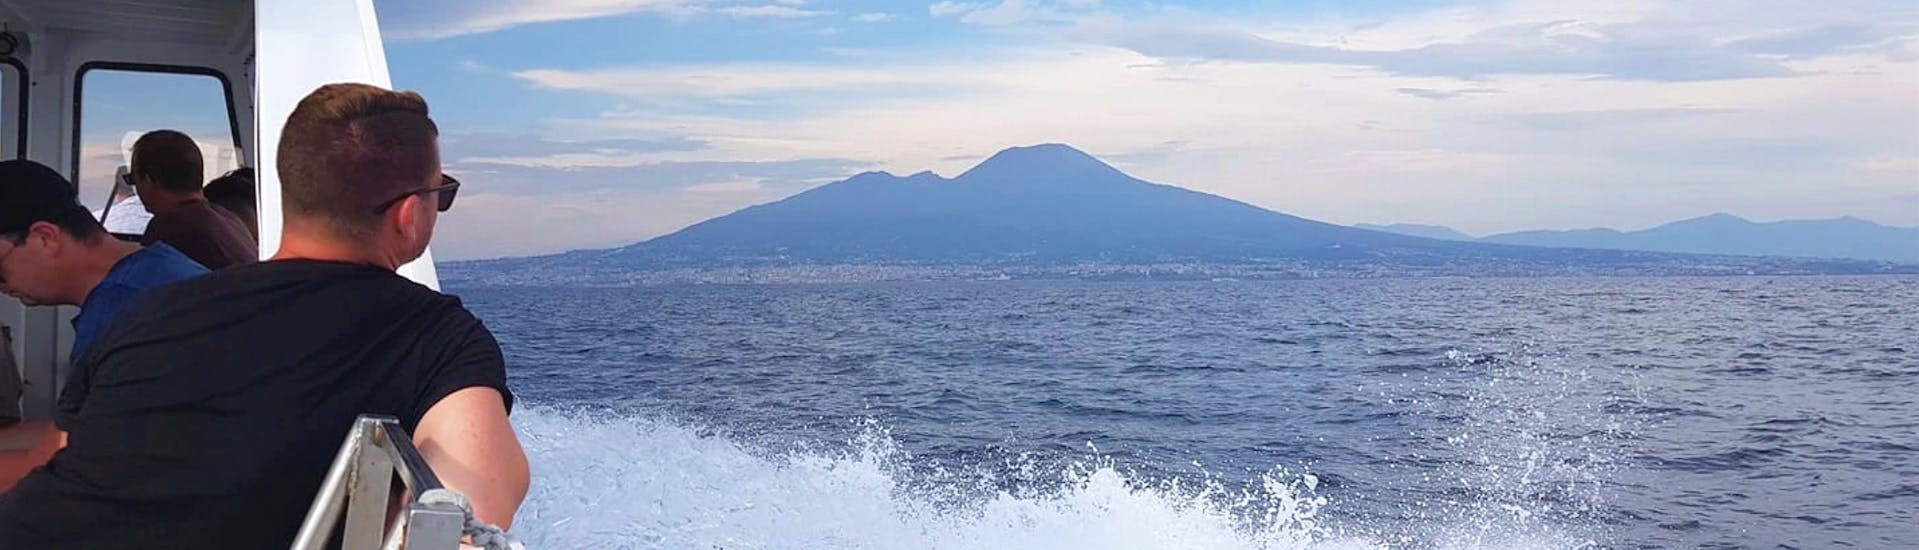 De boot van HP Travel vaart voor de vuurtoren van Anacapri tijdens de excursie van Napels naar Capri met rondleiding over het eiland.